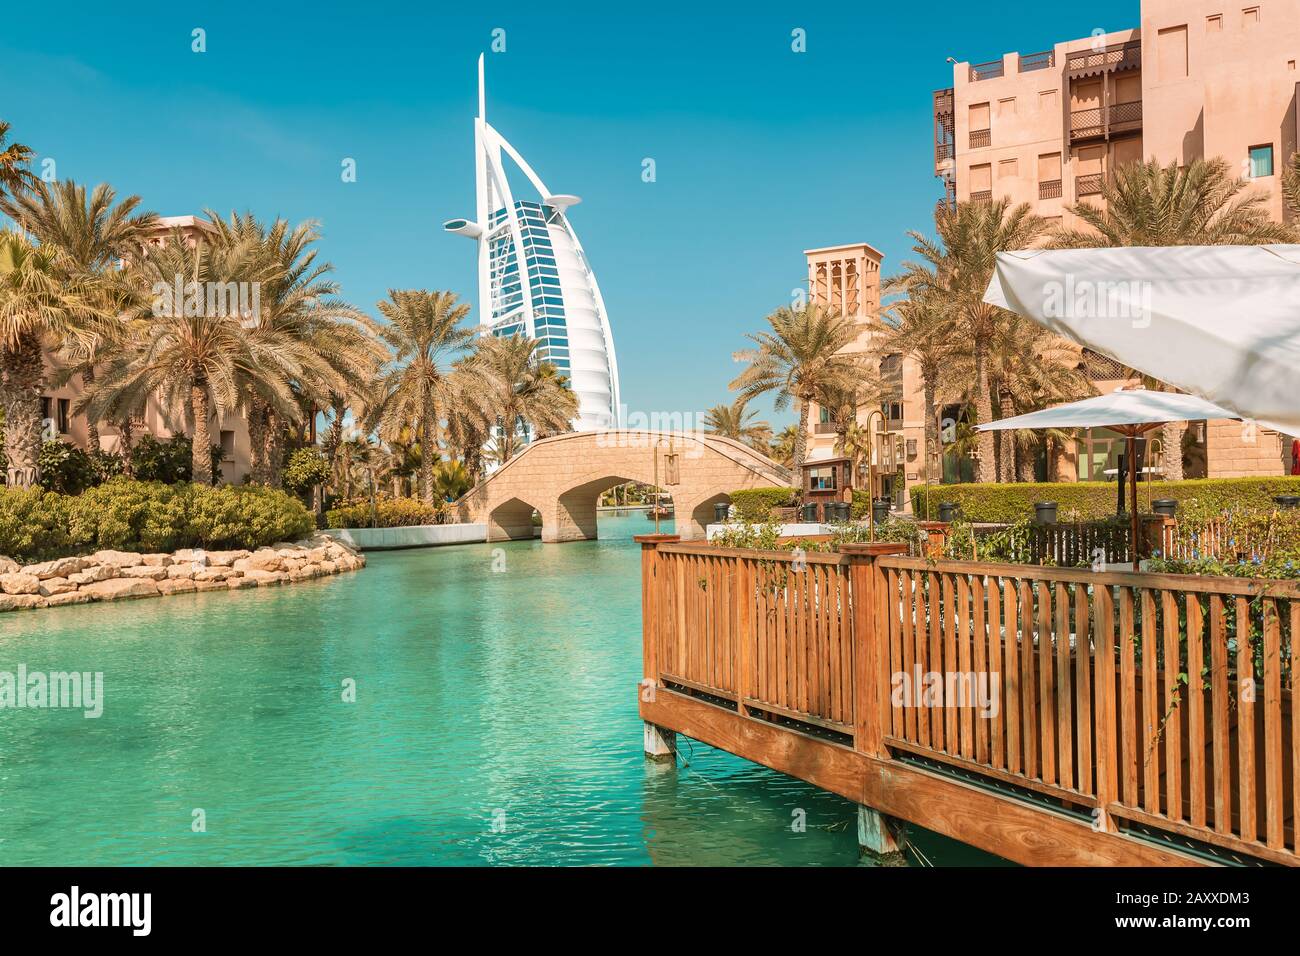 27 novembre 2019, Dubai, Emirati Arabi Uniti: Vista dell'elegante hotel a sette stelle Burj al Arab a forma di vela e canale artificiale con a b. Foto Stock